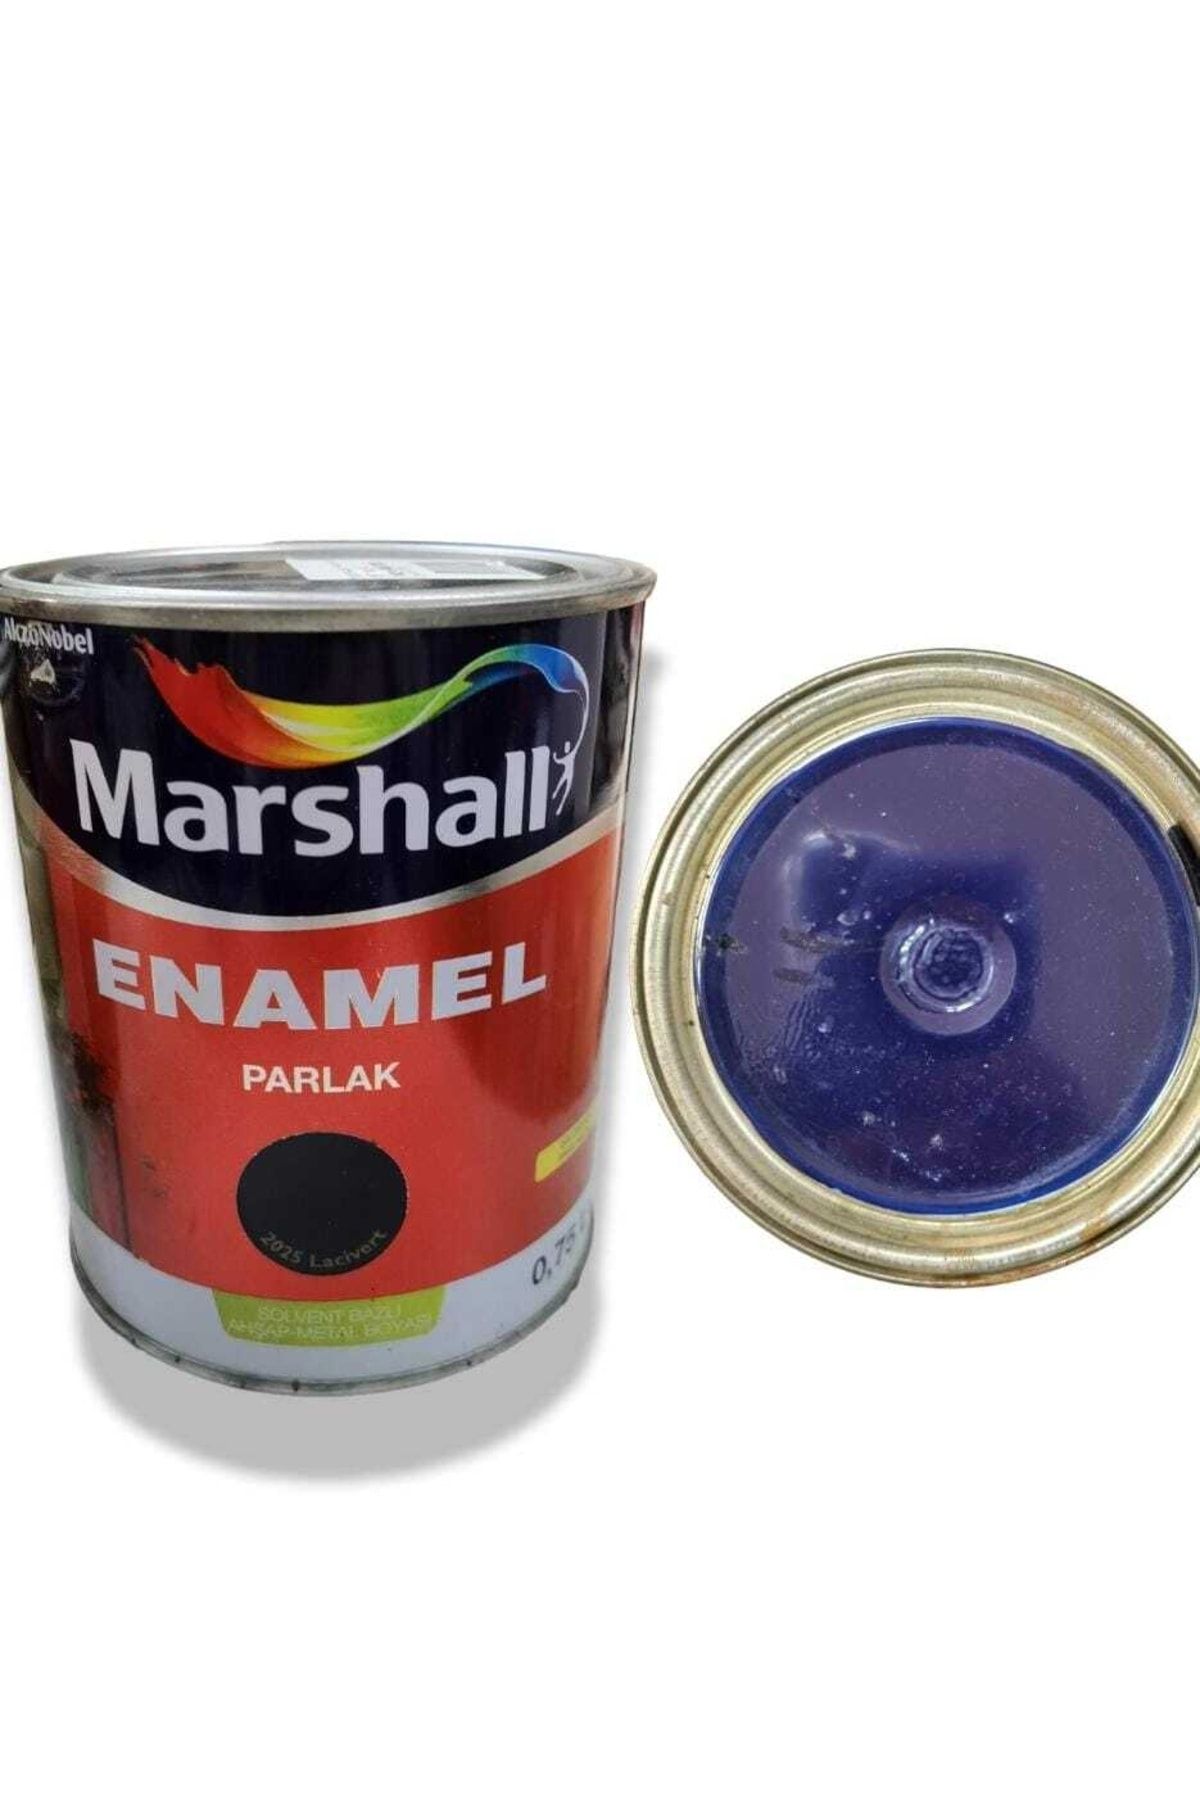 Marshall 0,75 Lt. (1 Kg) Lacivert Enamel Parlak Metal Ahşap Boyası (sentetik Boya)